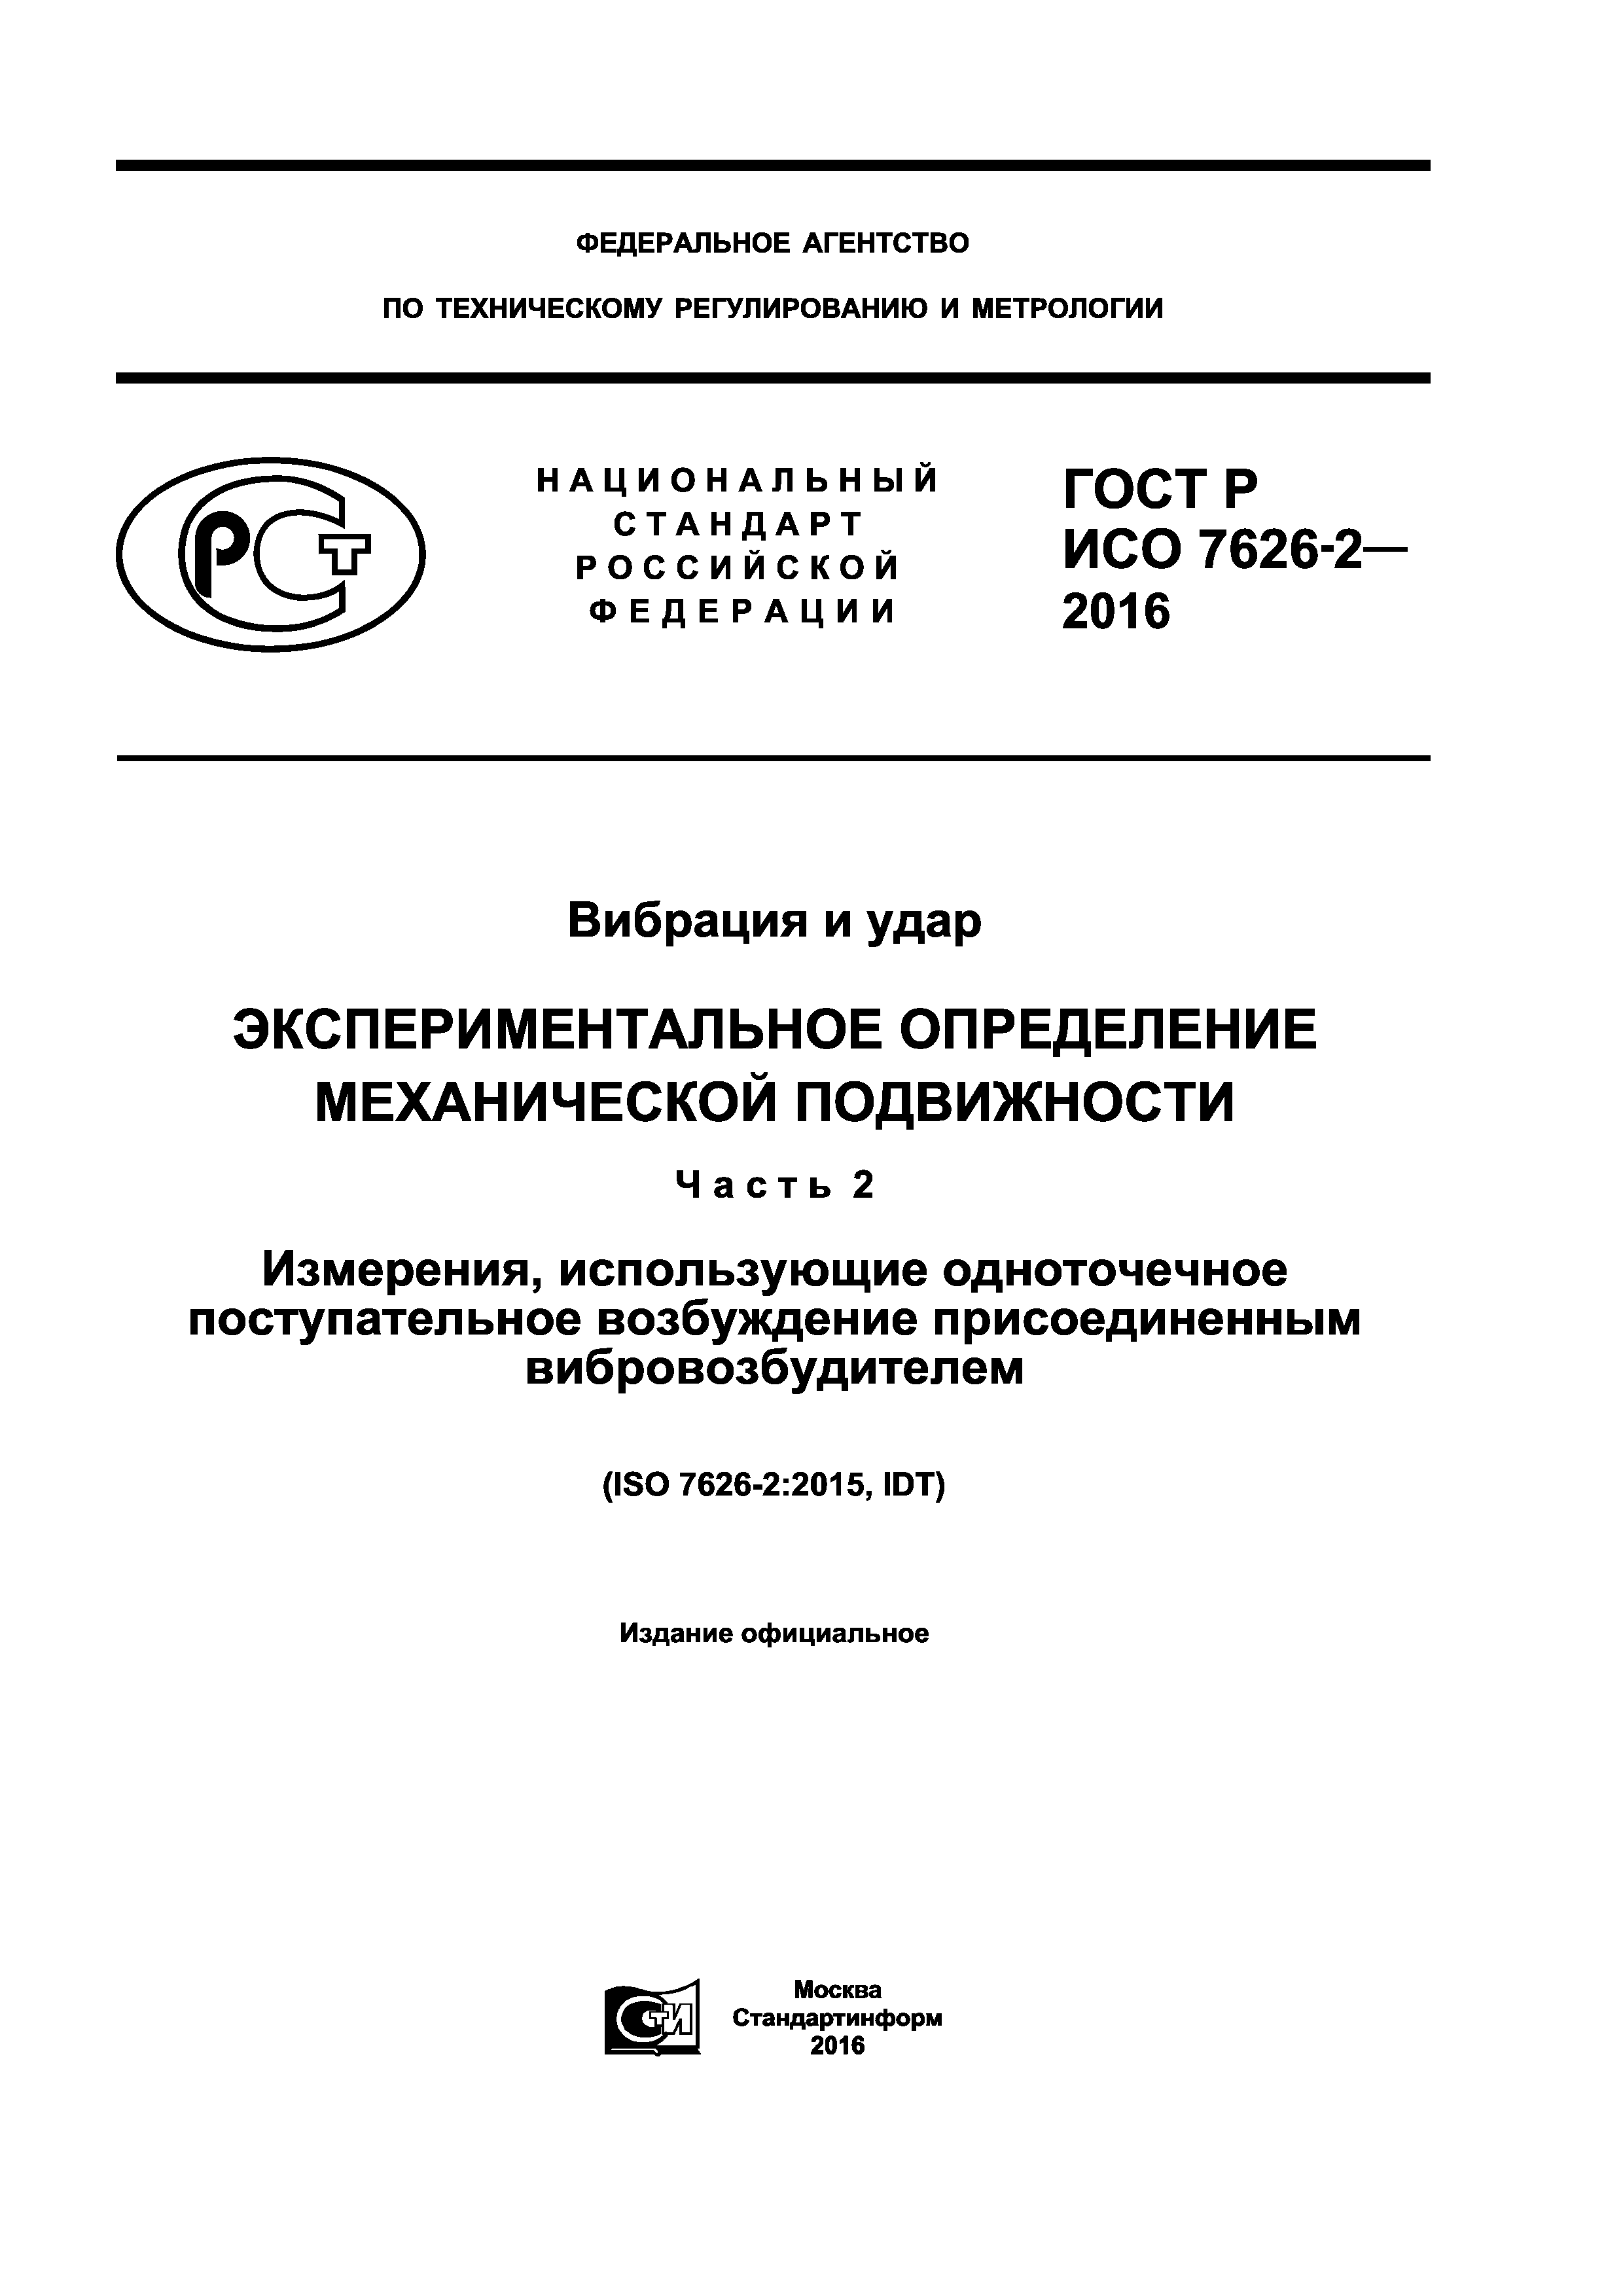 ГОСТ Р ИСО 7626-2-2016